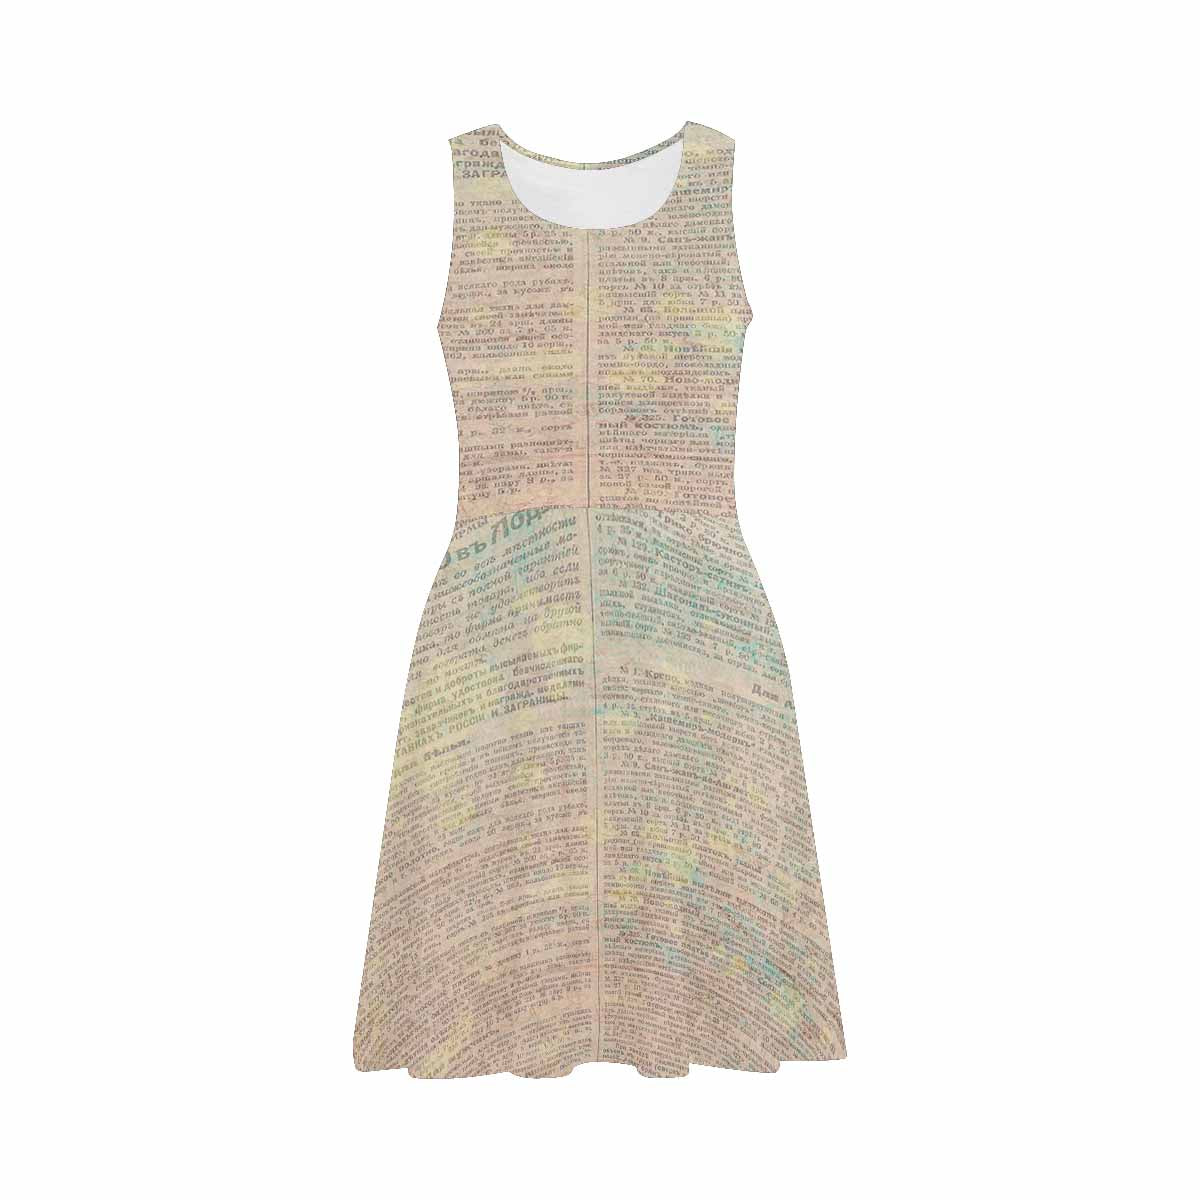 Antique General summer dress, MODEL 09534, design 61